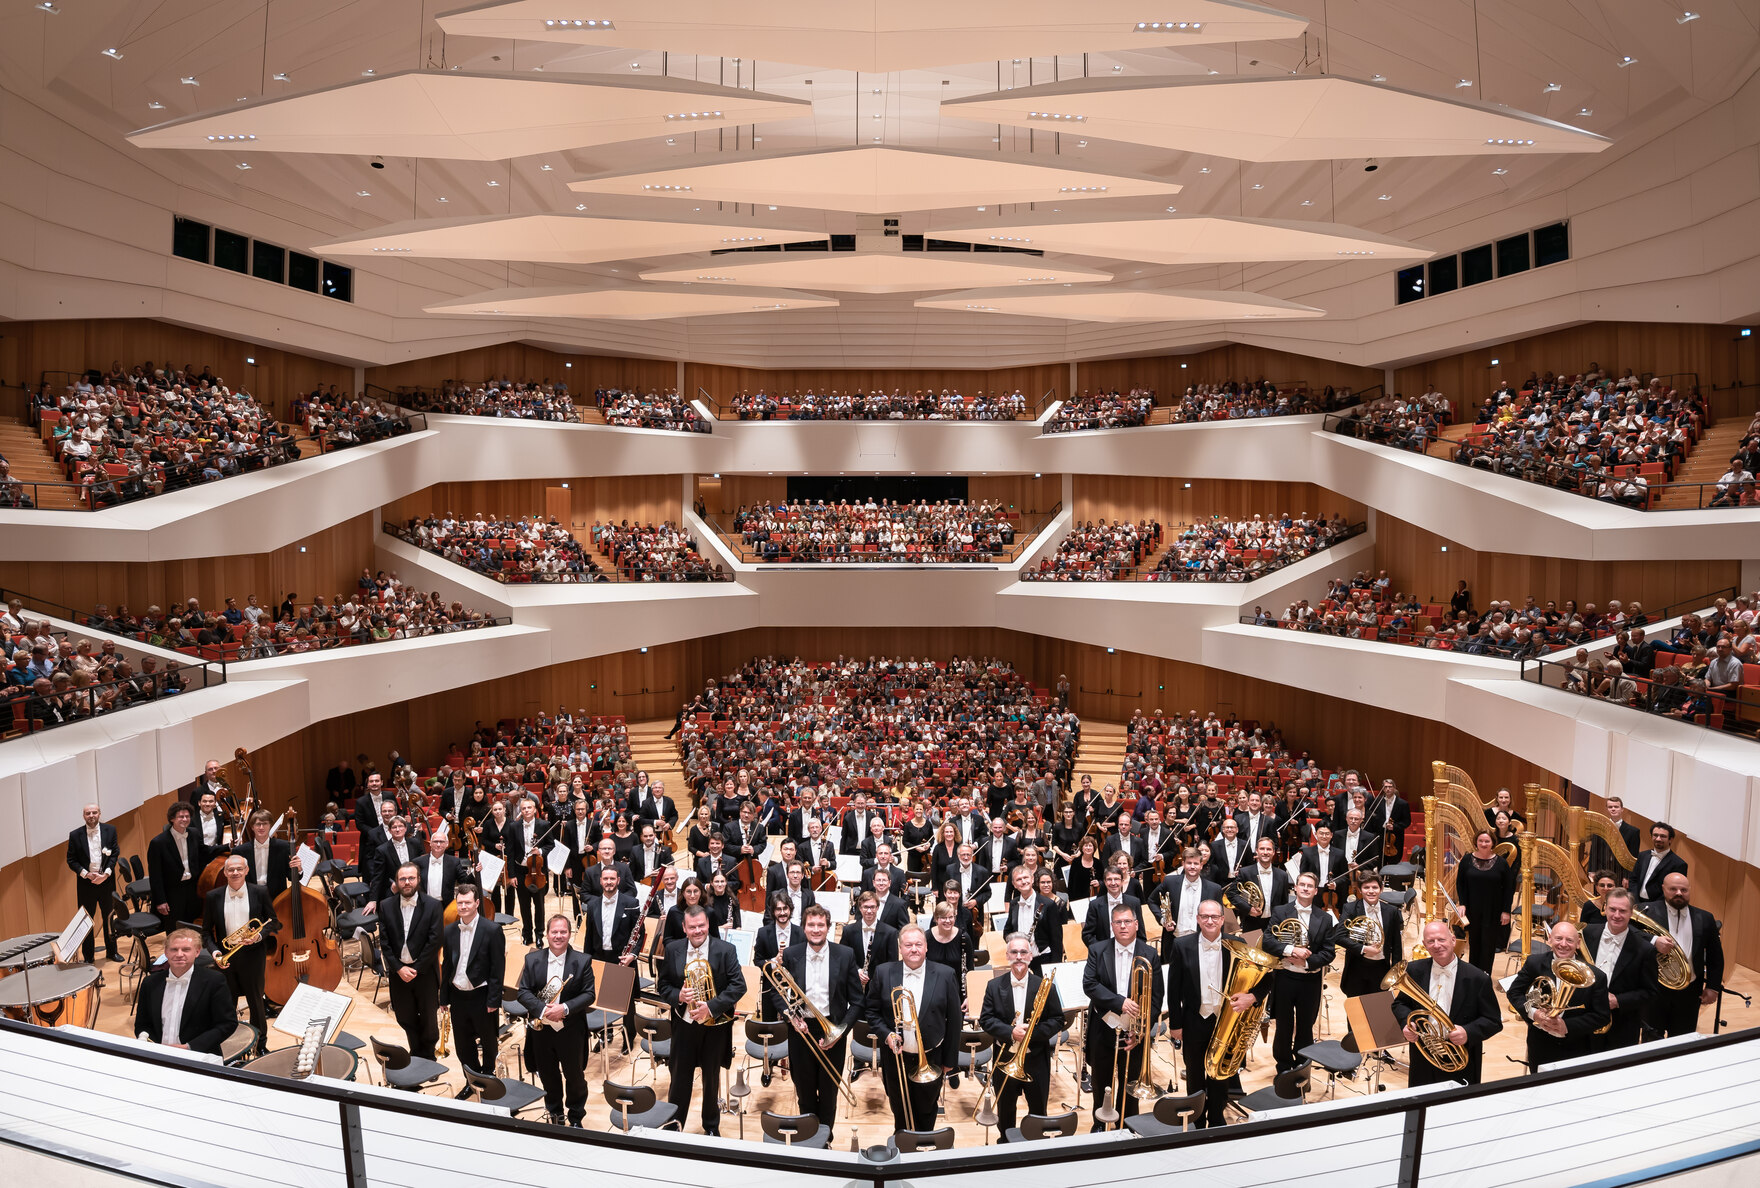 Blick in einen vollbesetzten Konzertsaal